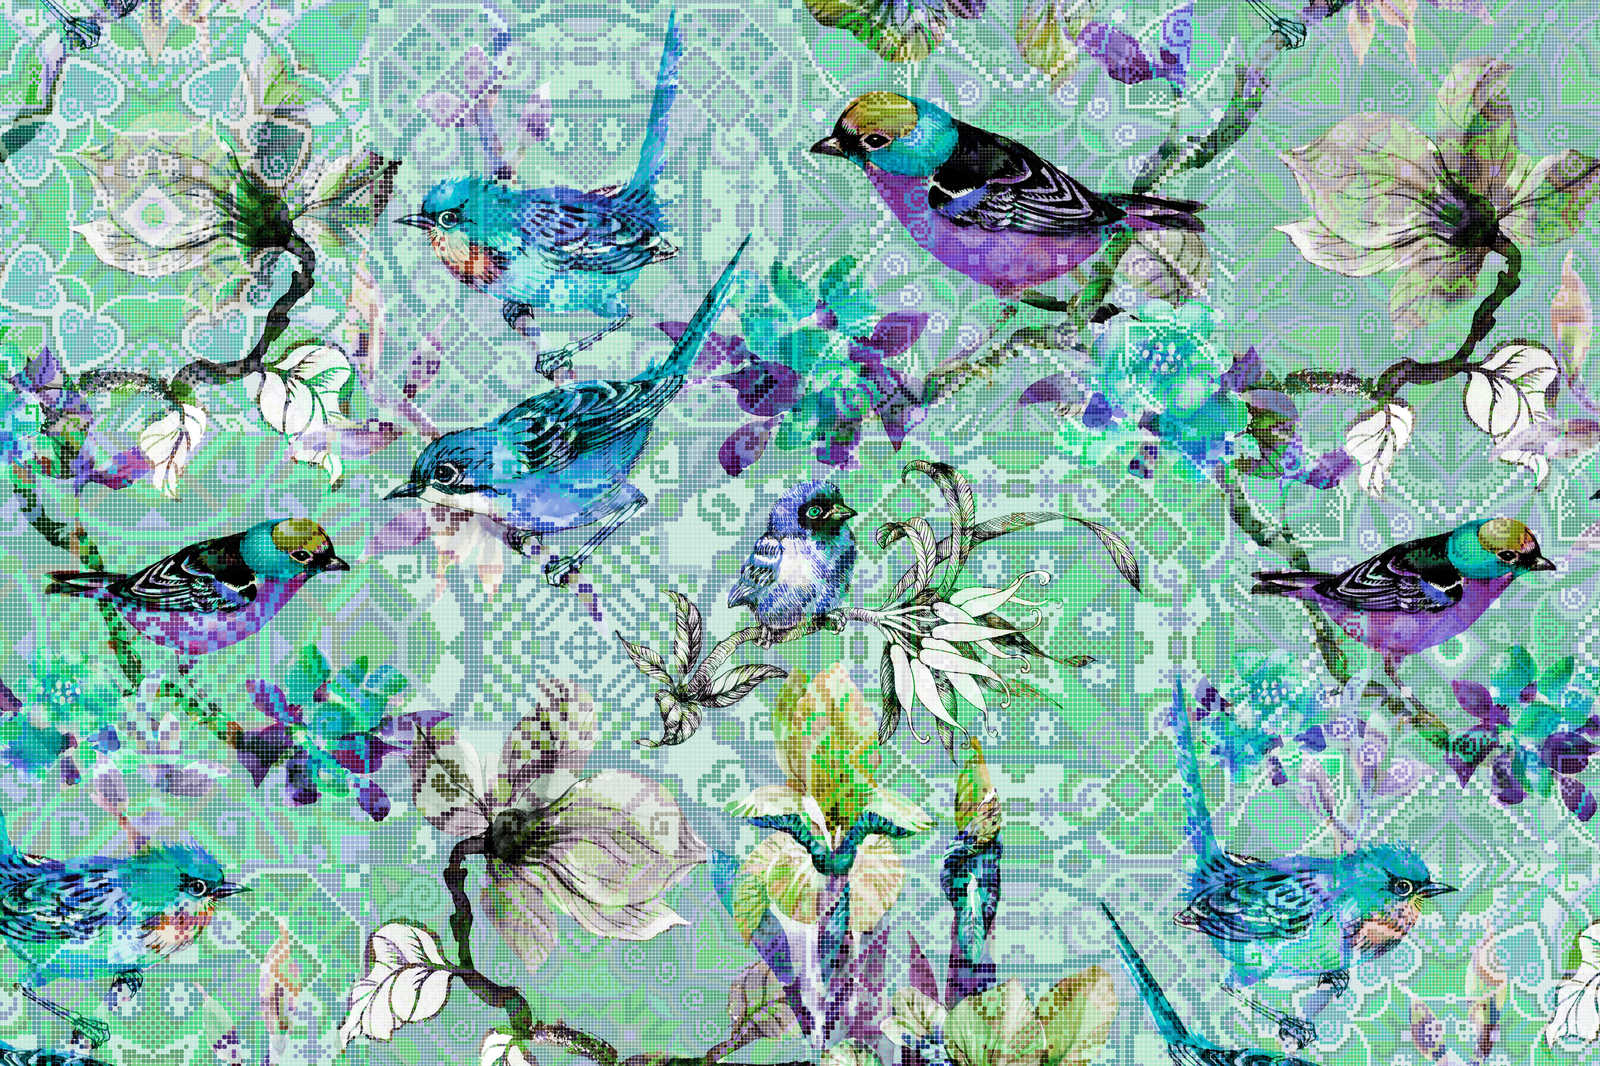             Cuadro lienzo pájaros en mosaico | pájaros en mosaico 3 - 0,90 m x 0,60 m
        